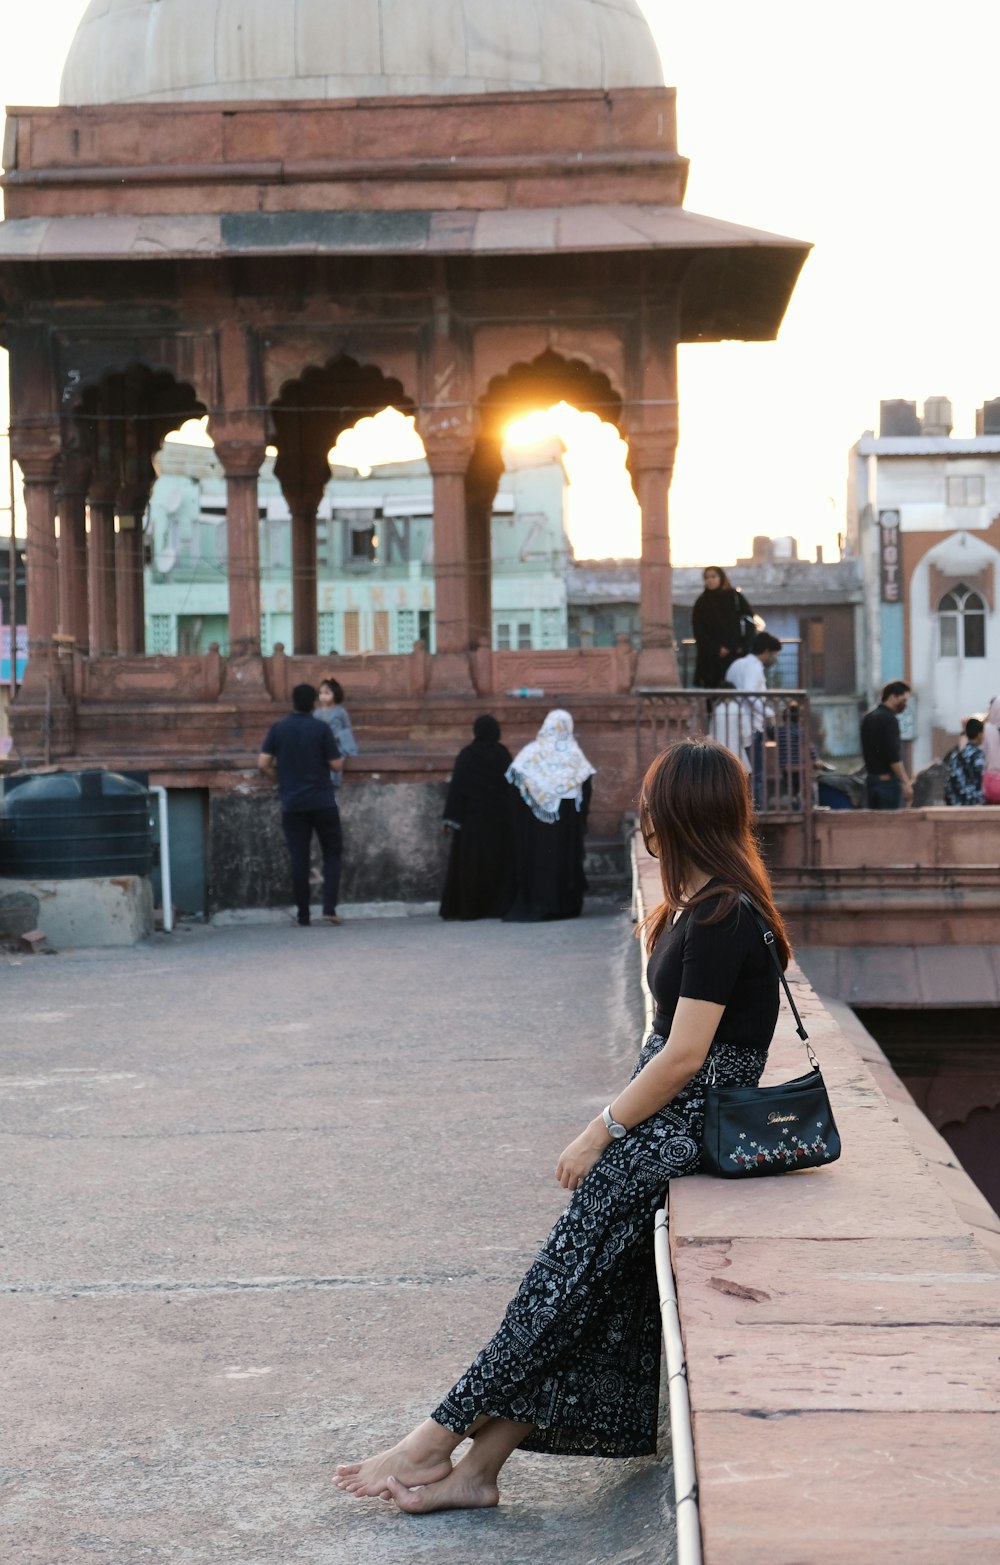 Frau in schwarz-weißem Kleid sitzt tagsüber auf einer Betonbank